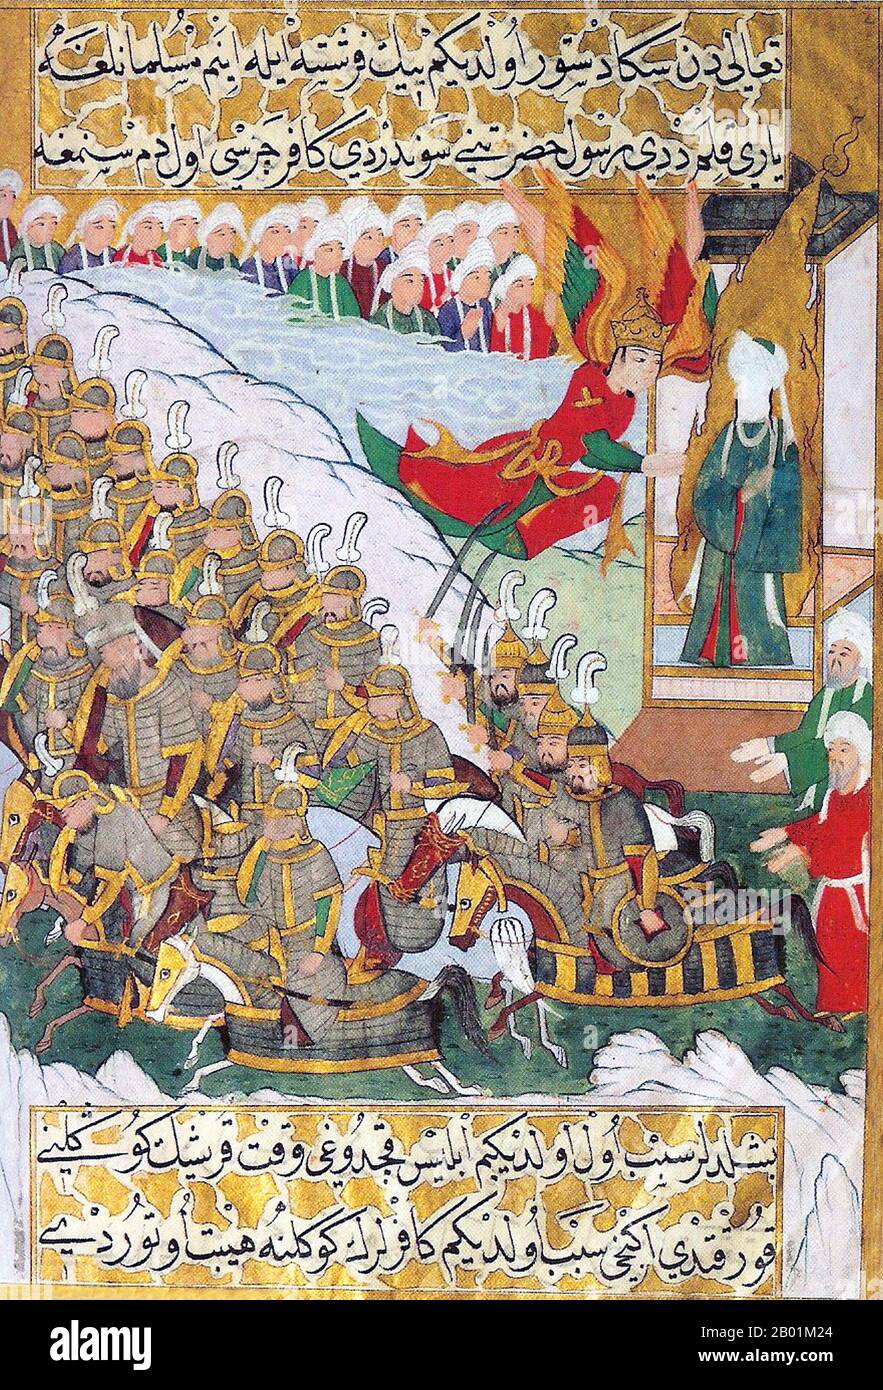 Türkei: Die Schlacht von Badr. Miniaturmalerei von Lütfi Abdullah aus dem Siyer-i Nebi (Leben des Propheten), um 1594. Die Schlacht von Badr, die am Samstag, den 13. März 624 n. Chr. in der Region Hejaz in Westarabien (dem heutigen Saudi-Arabien) ausgetragen wurde, war eine Schlüsselschlacht in den frühen Tagen des Islam und ein Wendepunkt im Kampf Muhammads mit seinen Gegnern unter den Quraish in Mekka. Die Schlacht wurde in der islamischen Geschichte als entscheidender Sieg überliefert, der auf göttliche Intervention zurückzuführen ist, oder durch säkulare Quellen auf das strategische Genie Mohammeds. Stockfoto